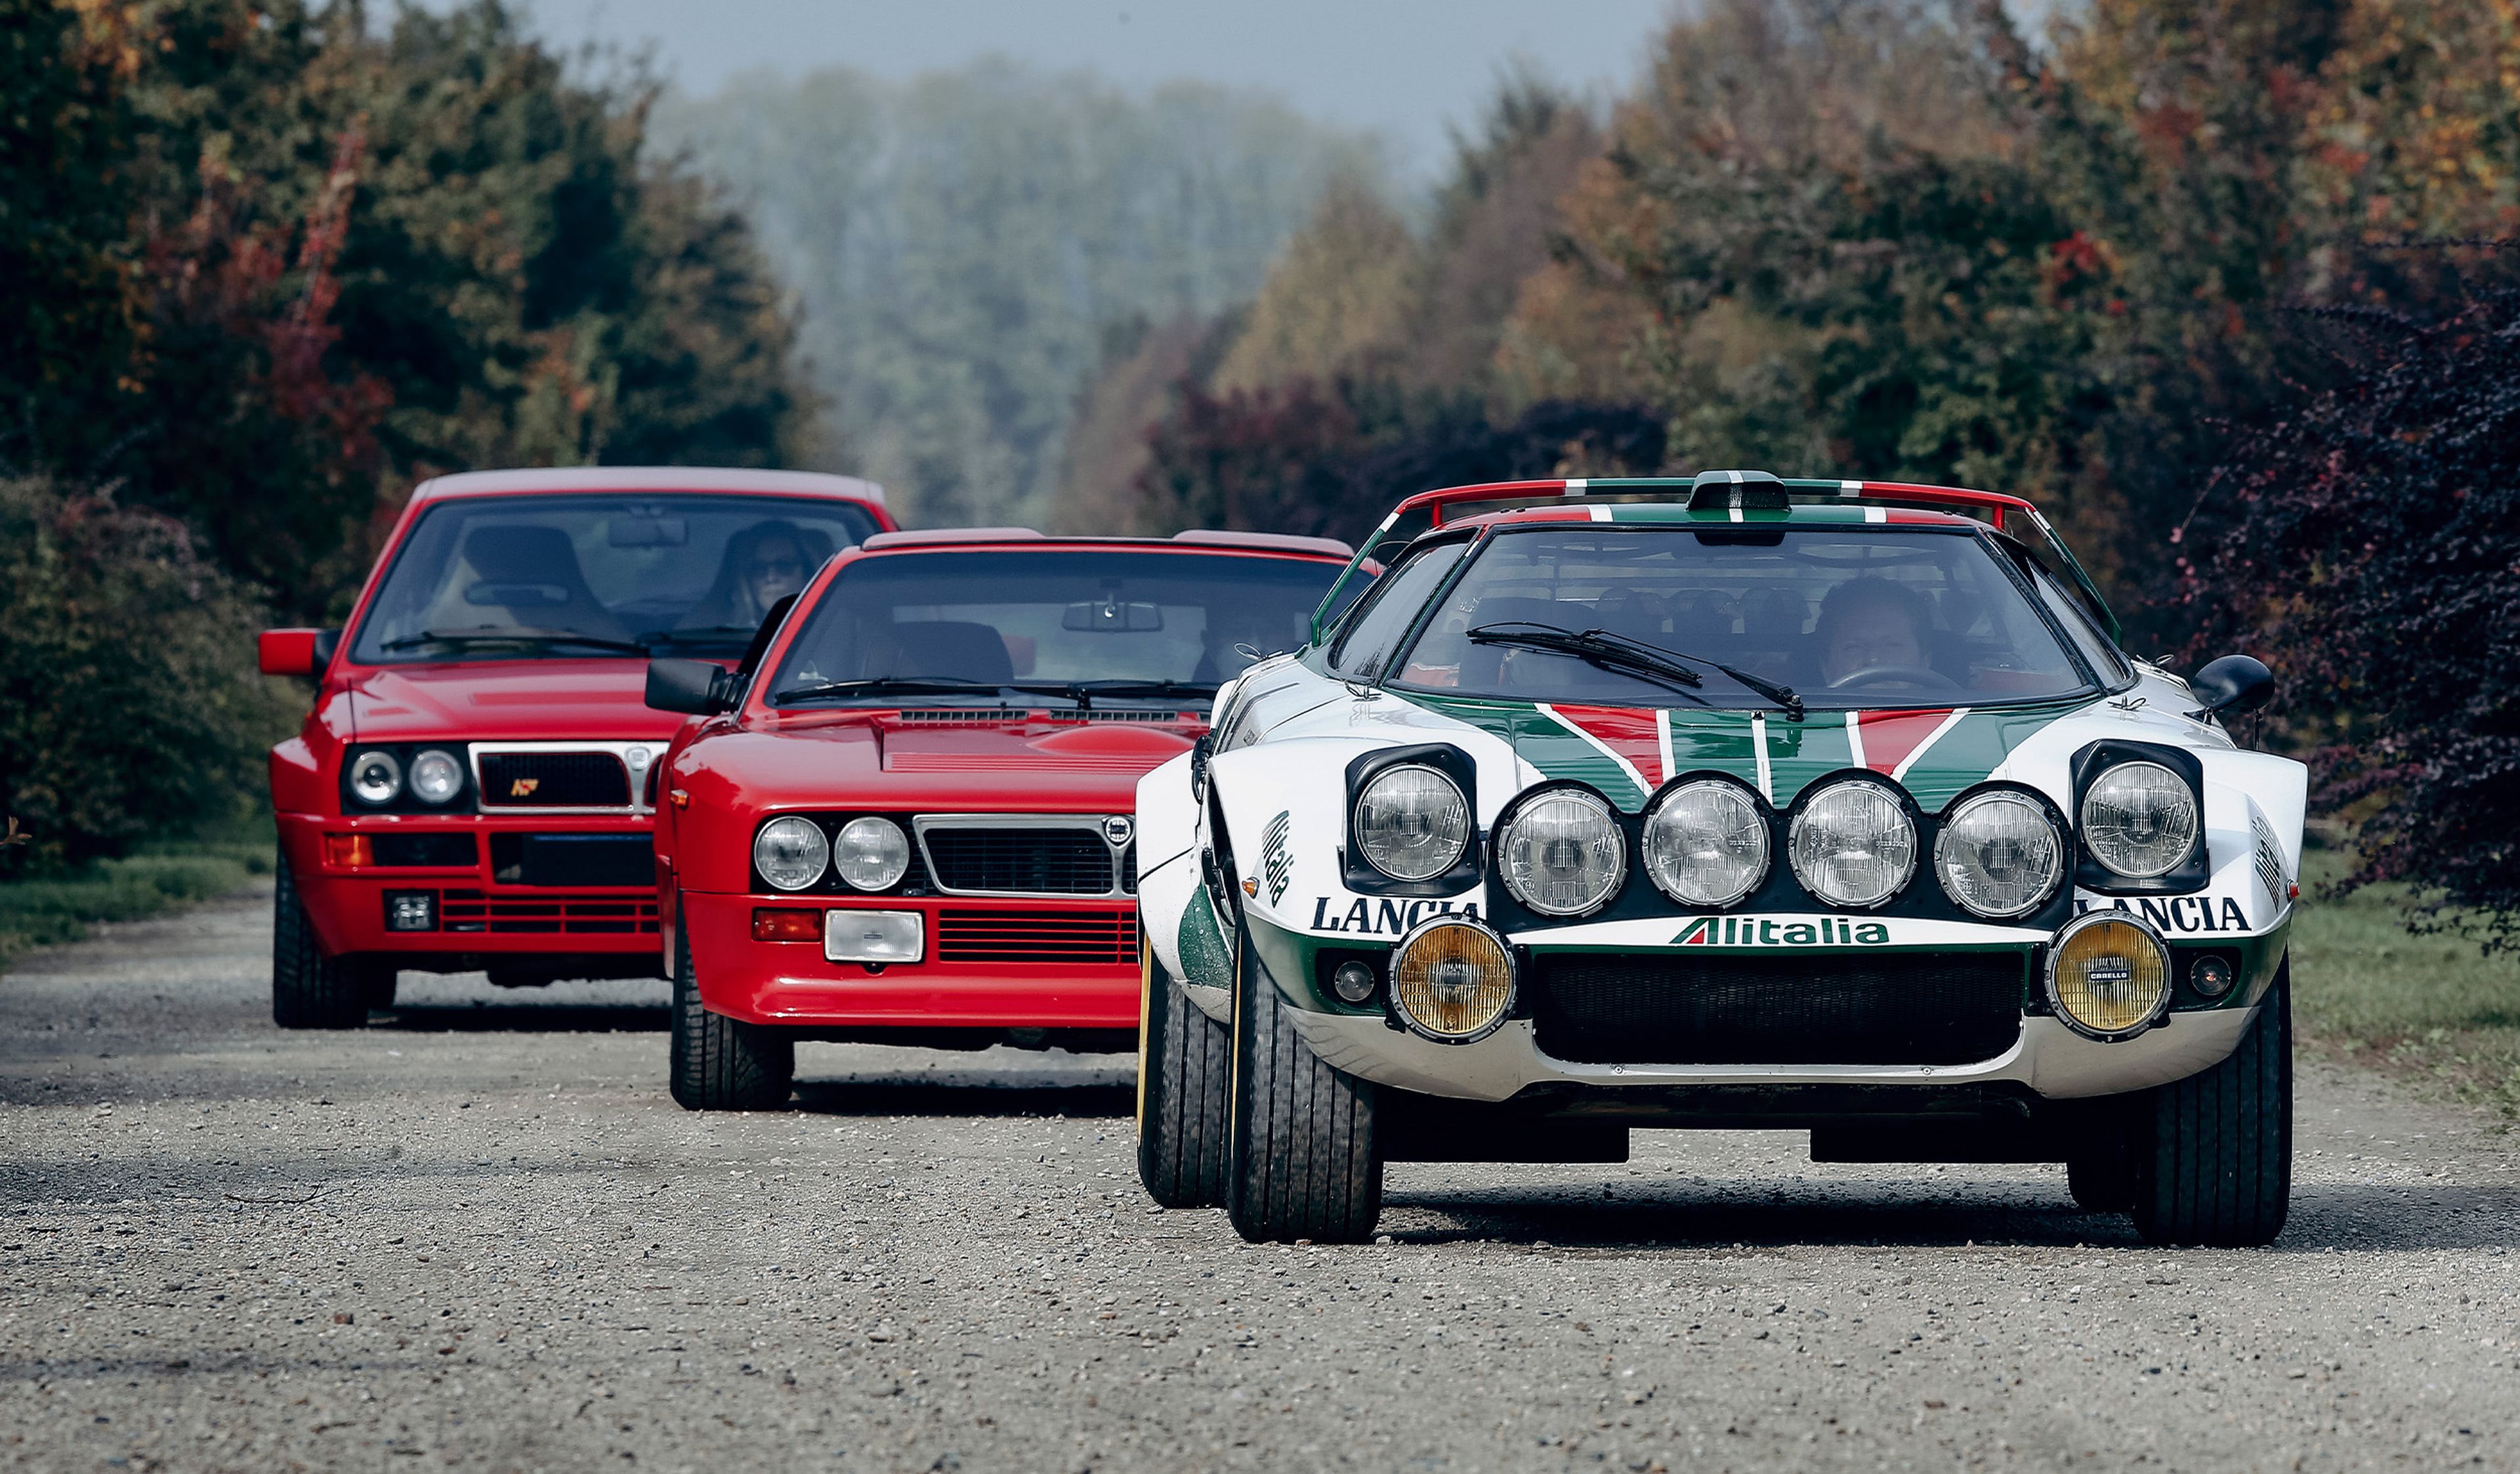 Lancia Stratos, Lancia 037 y Lancia HF Delta Integrale